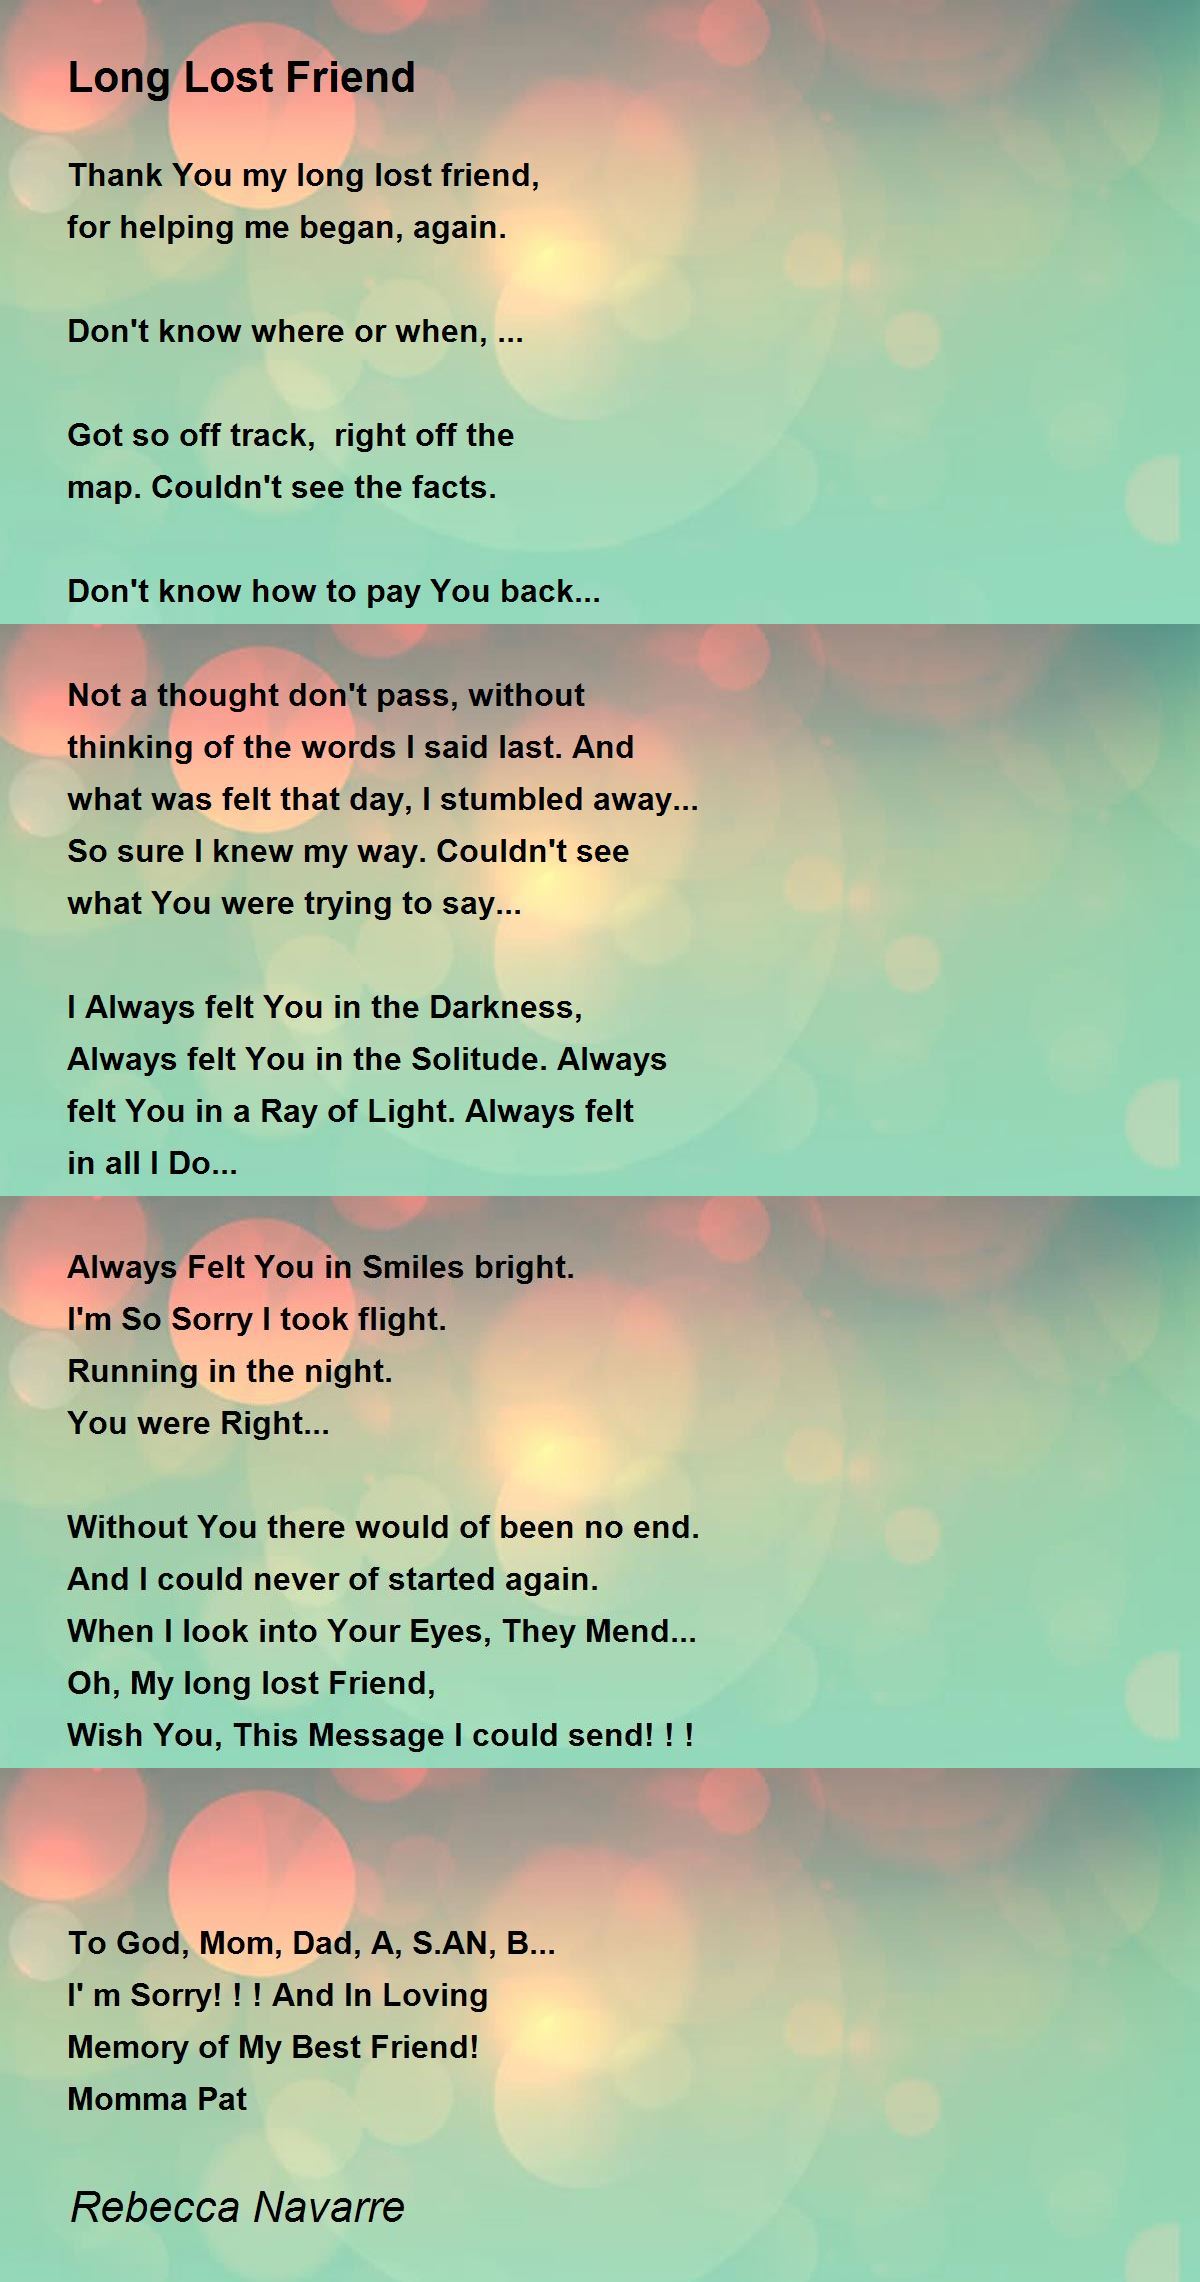 Long Lost Friend - Long Lost Friend Poem by Rebecca Navarre